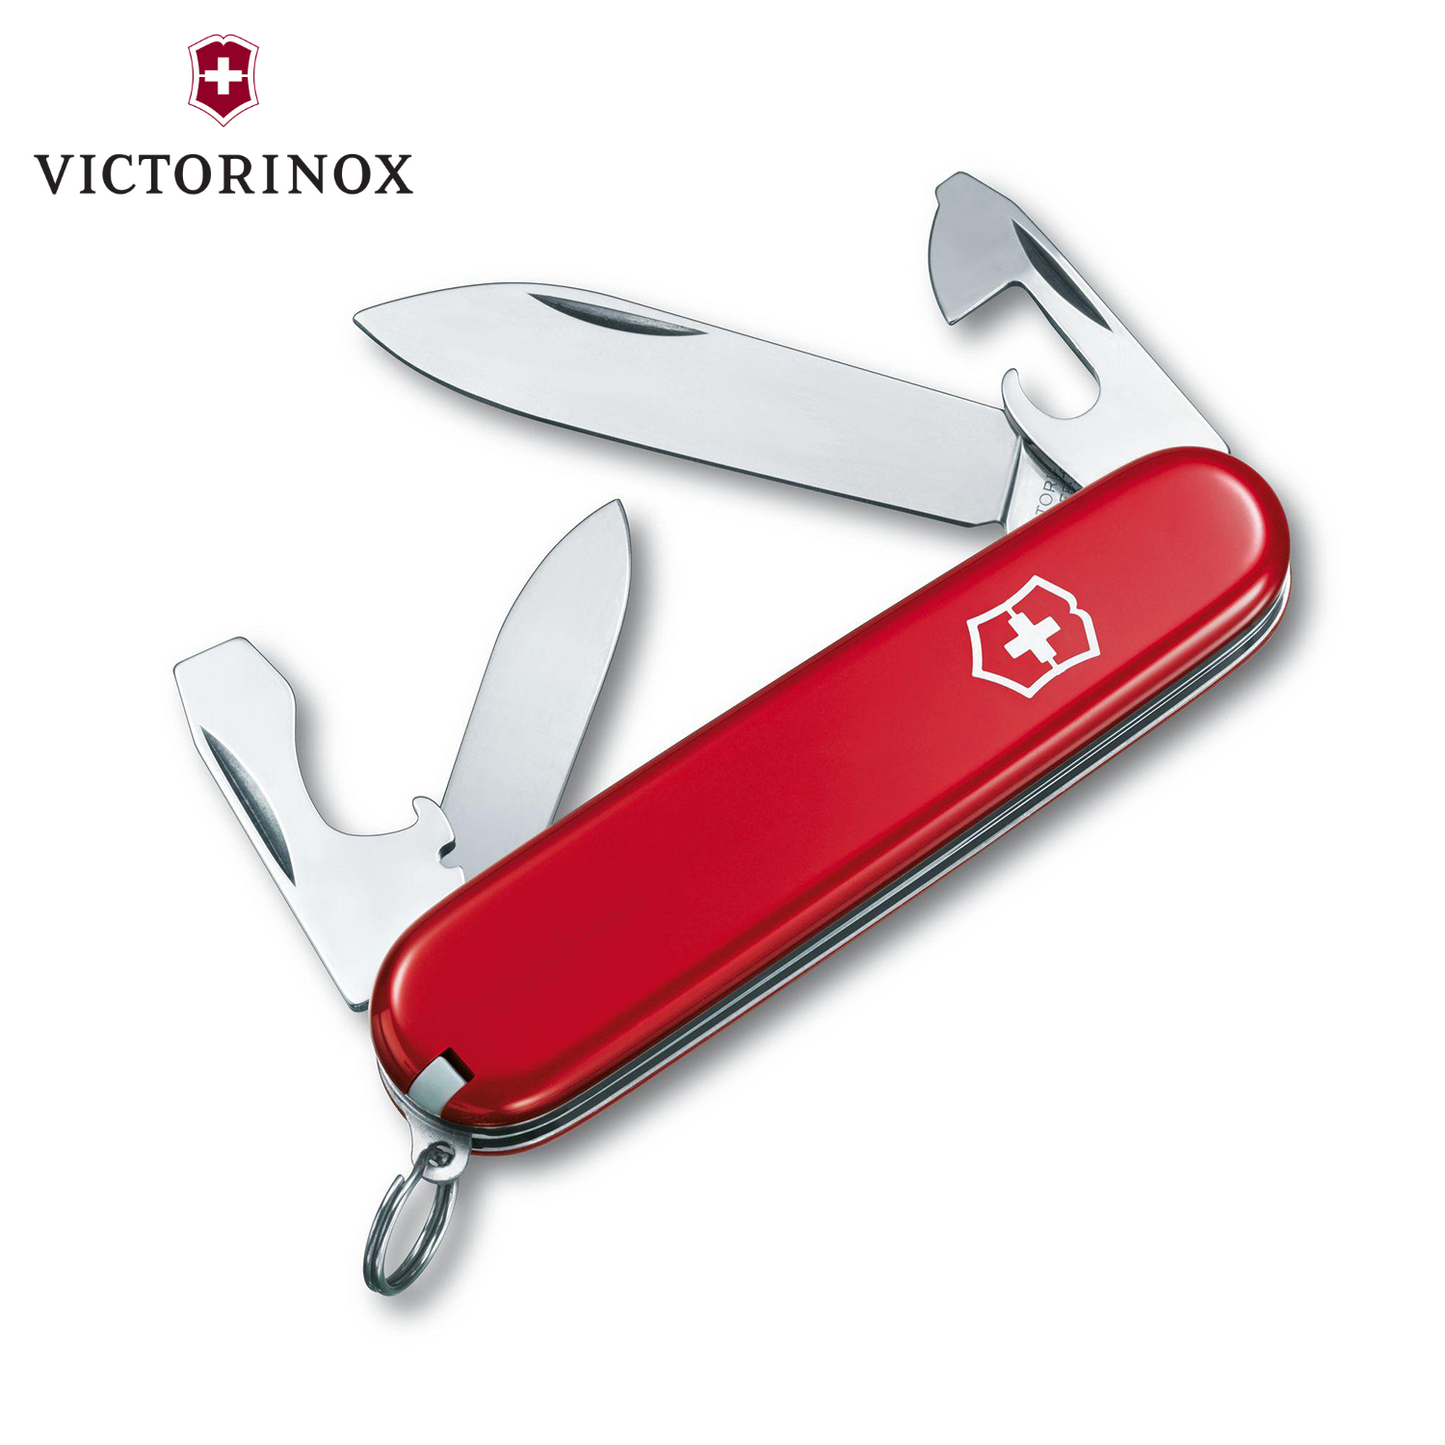 Victorinox Recruit 經典日常多用途工具 [V101]